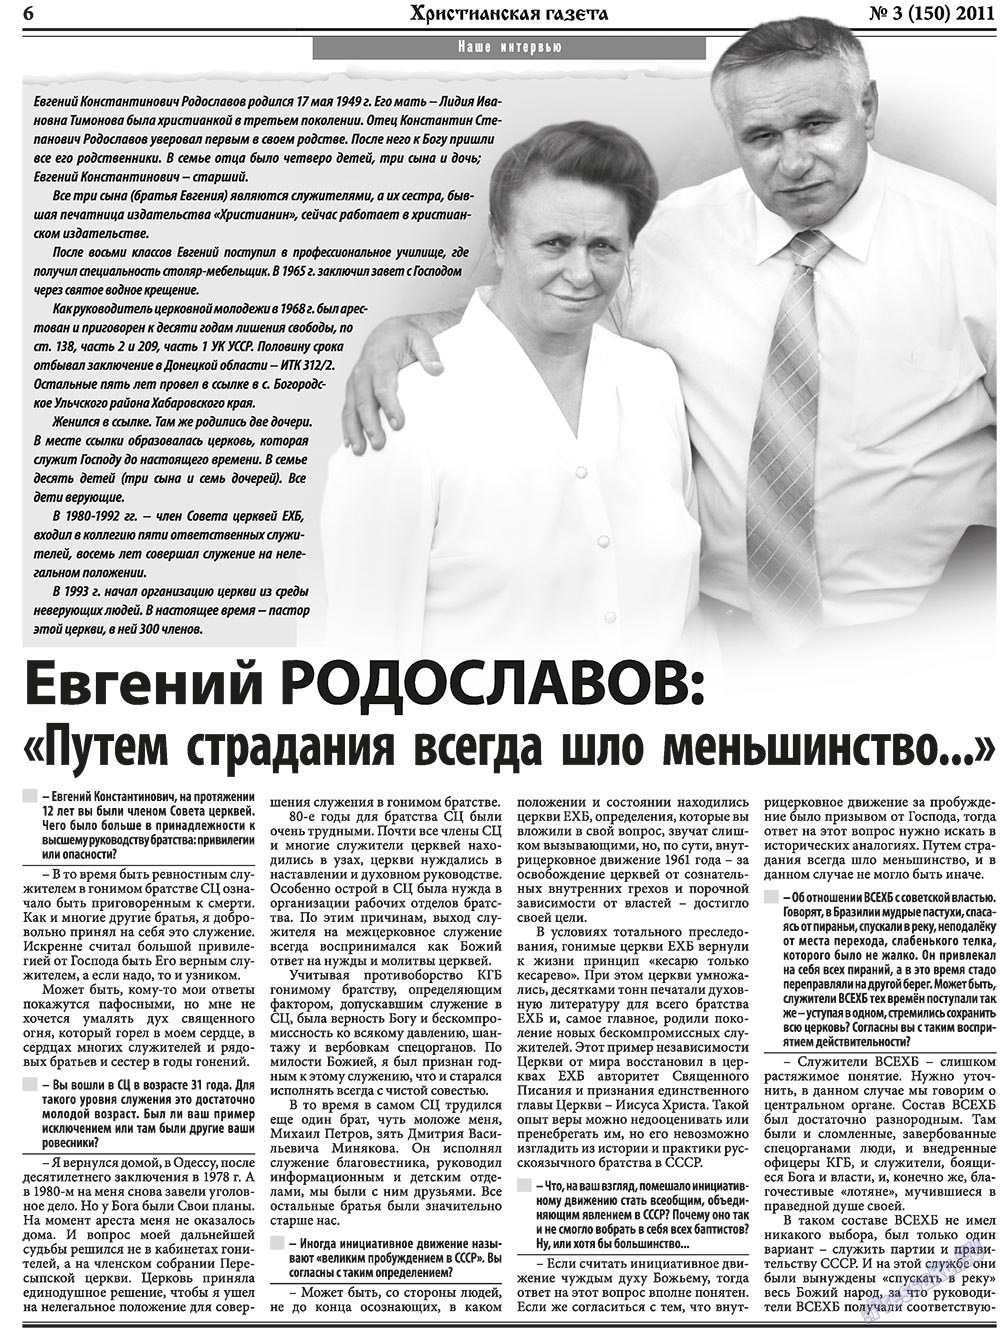 Христианская газета, газета. 2011 №3 стр.6